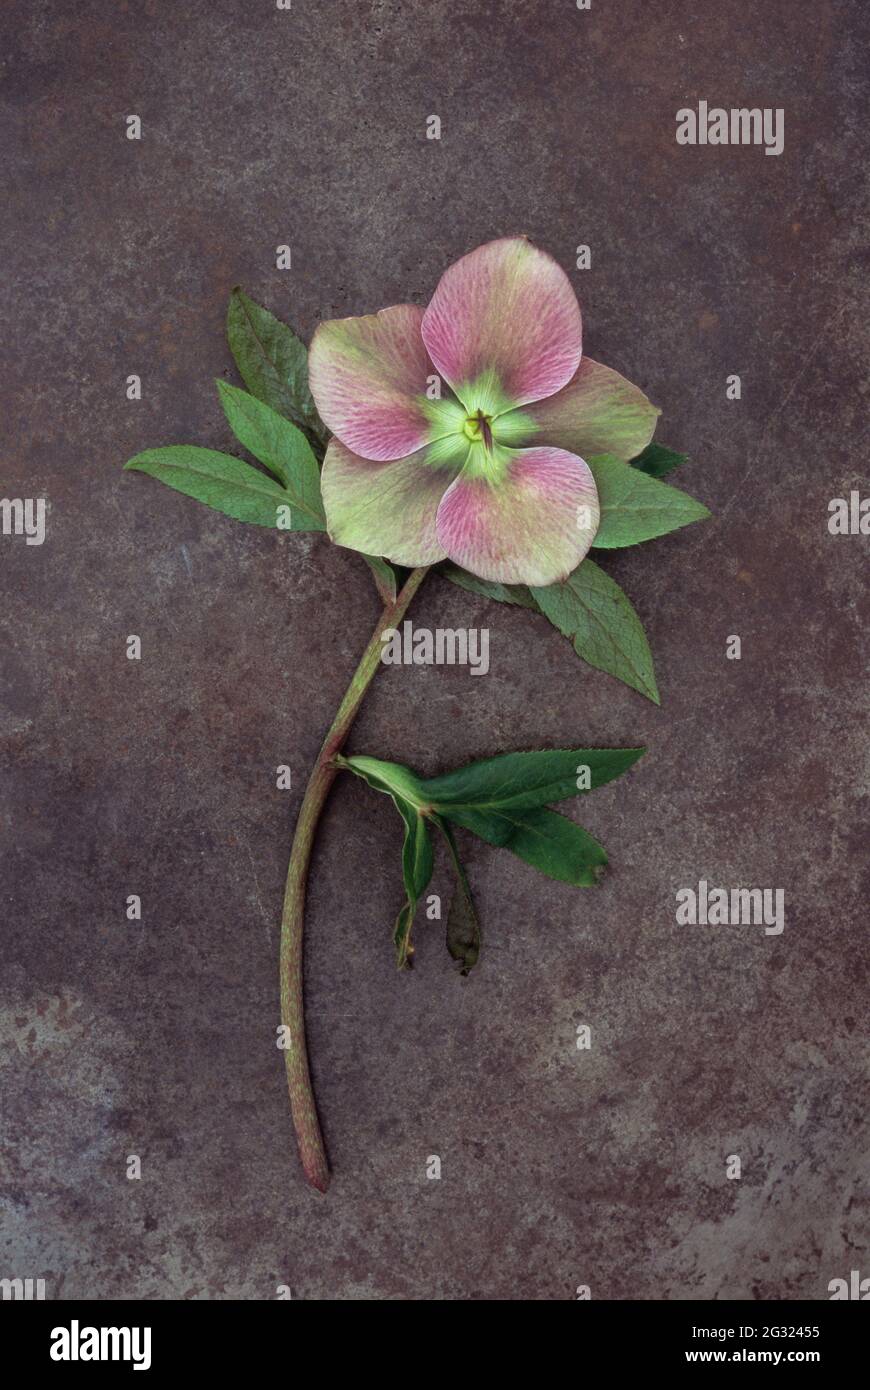 Tige unique et fleur en décoloration de la rose de Lenten ou de Helleborus orientalis, qui se trouvent sur du métal terni Banque D'Images